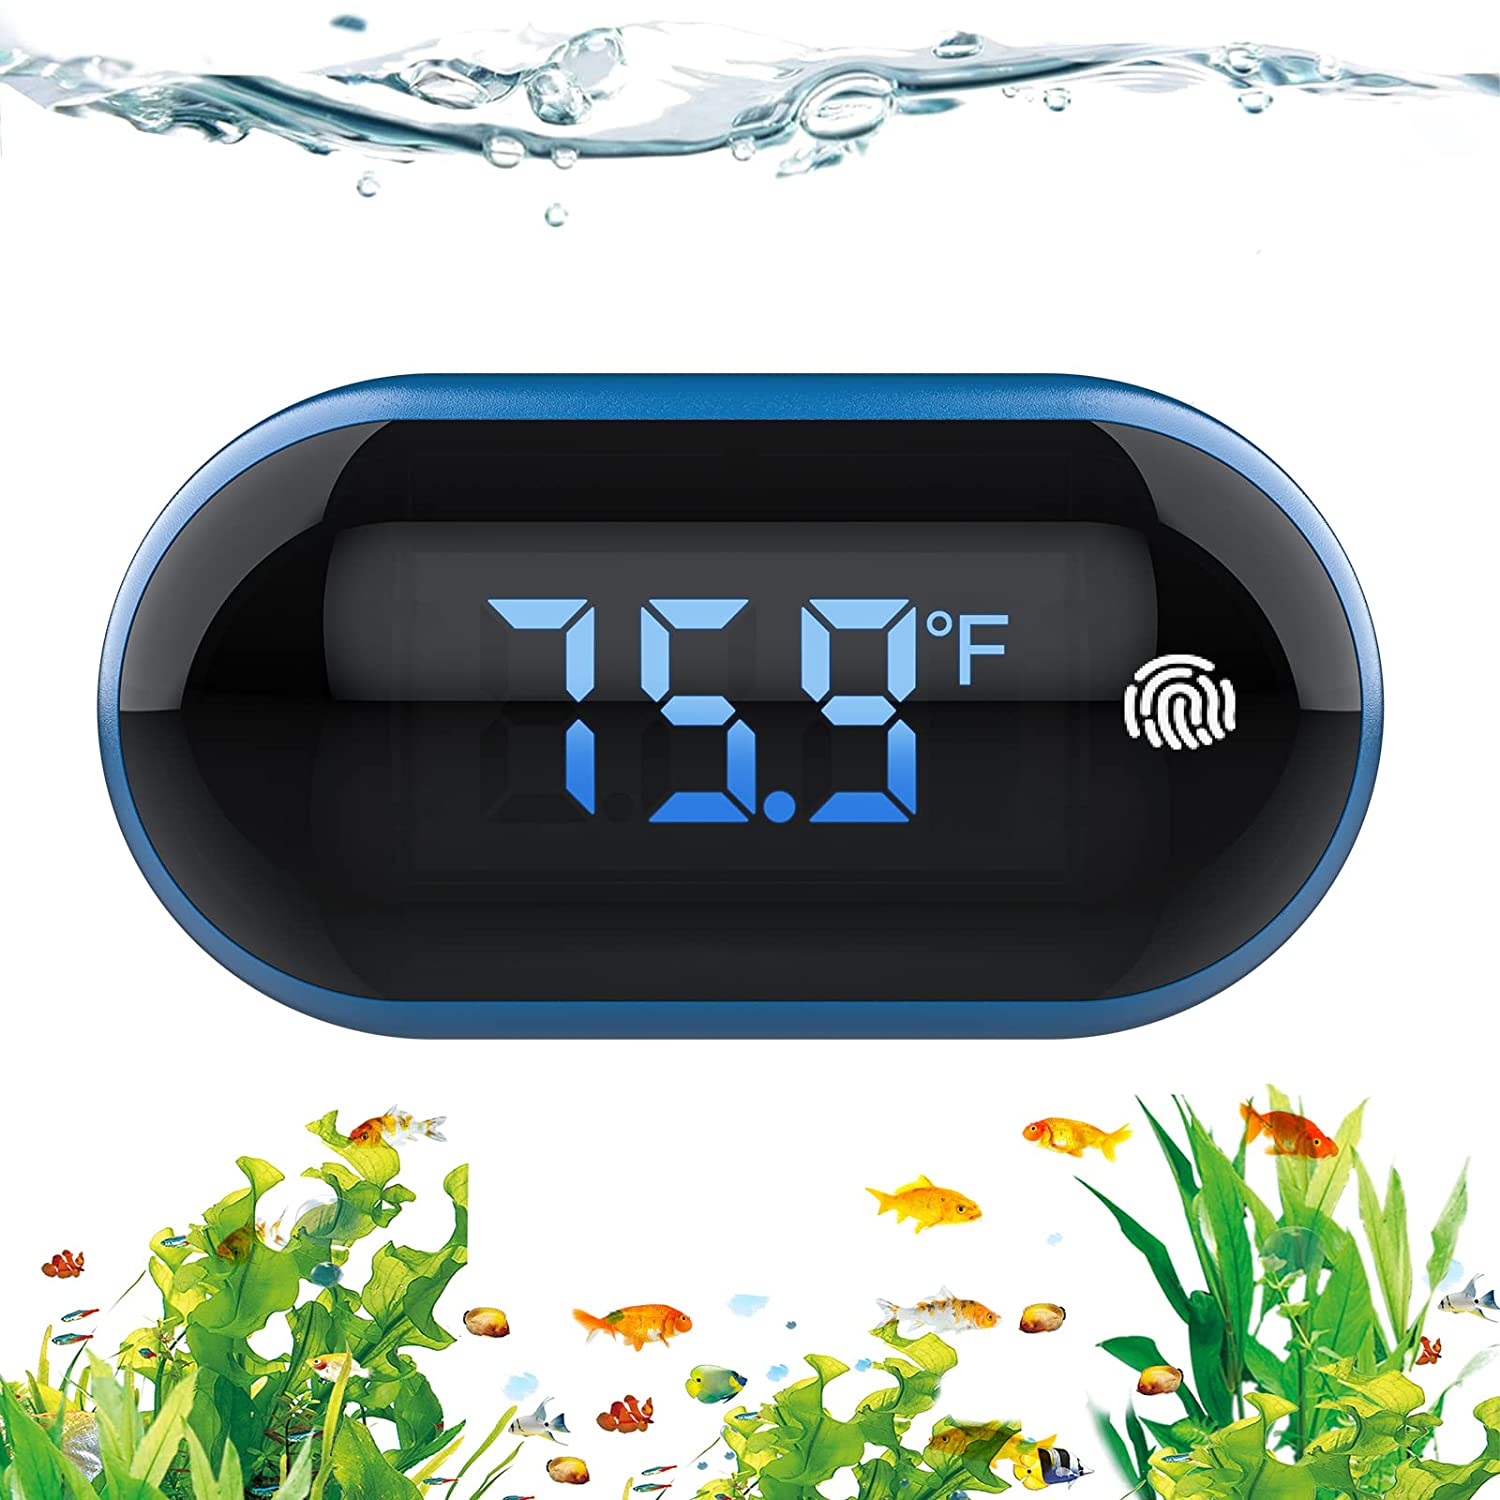 PAIZOO Digital Aquarium Thermometer